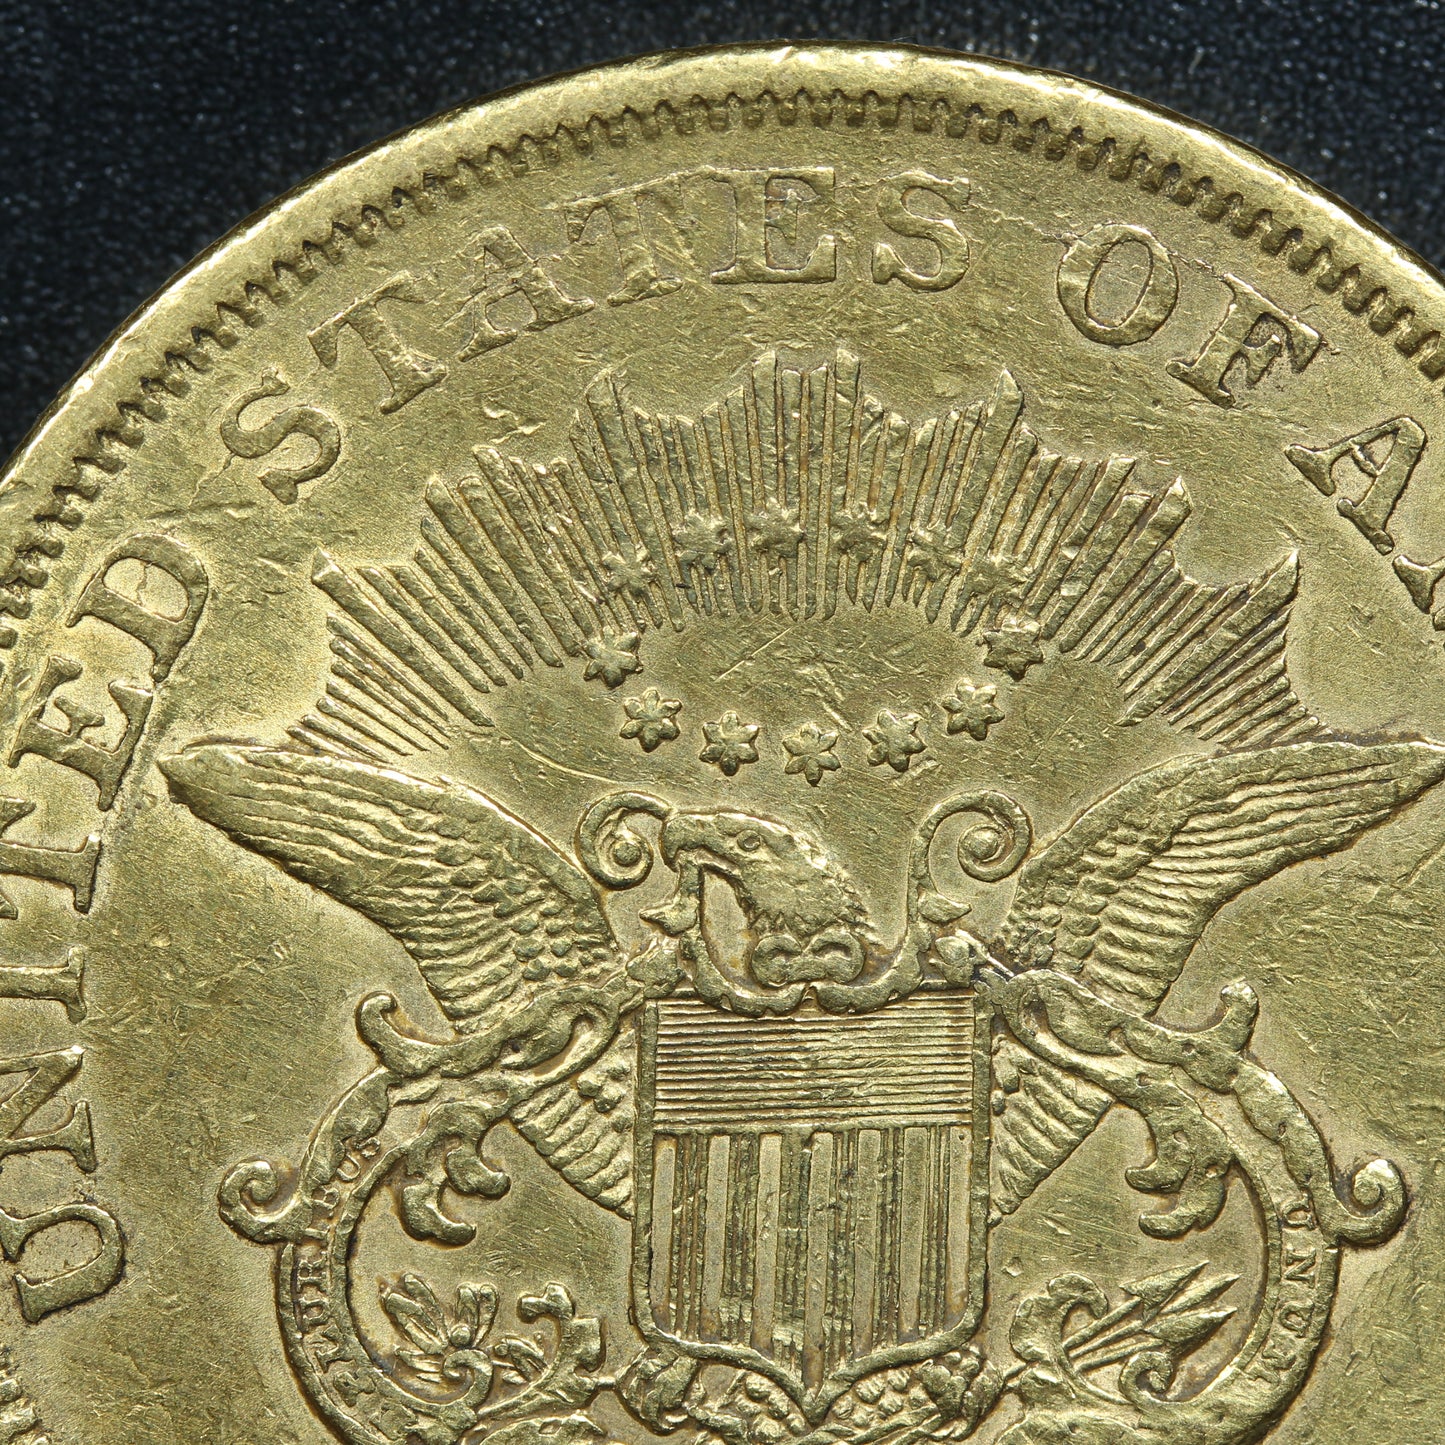 1861 S (San Francisco) $20 Gold Liberty Head Double Eagle Coin